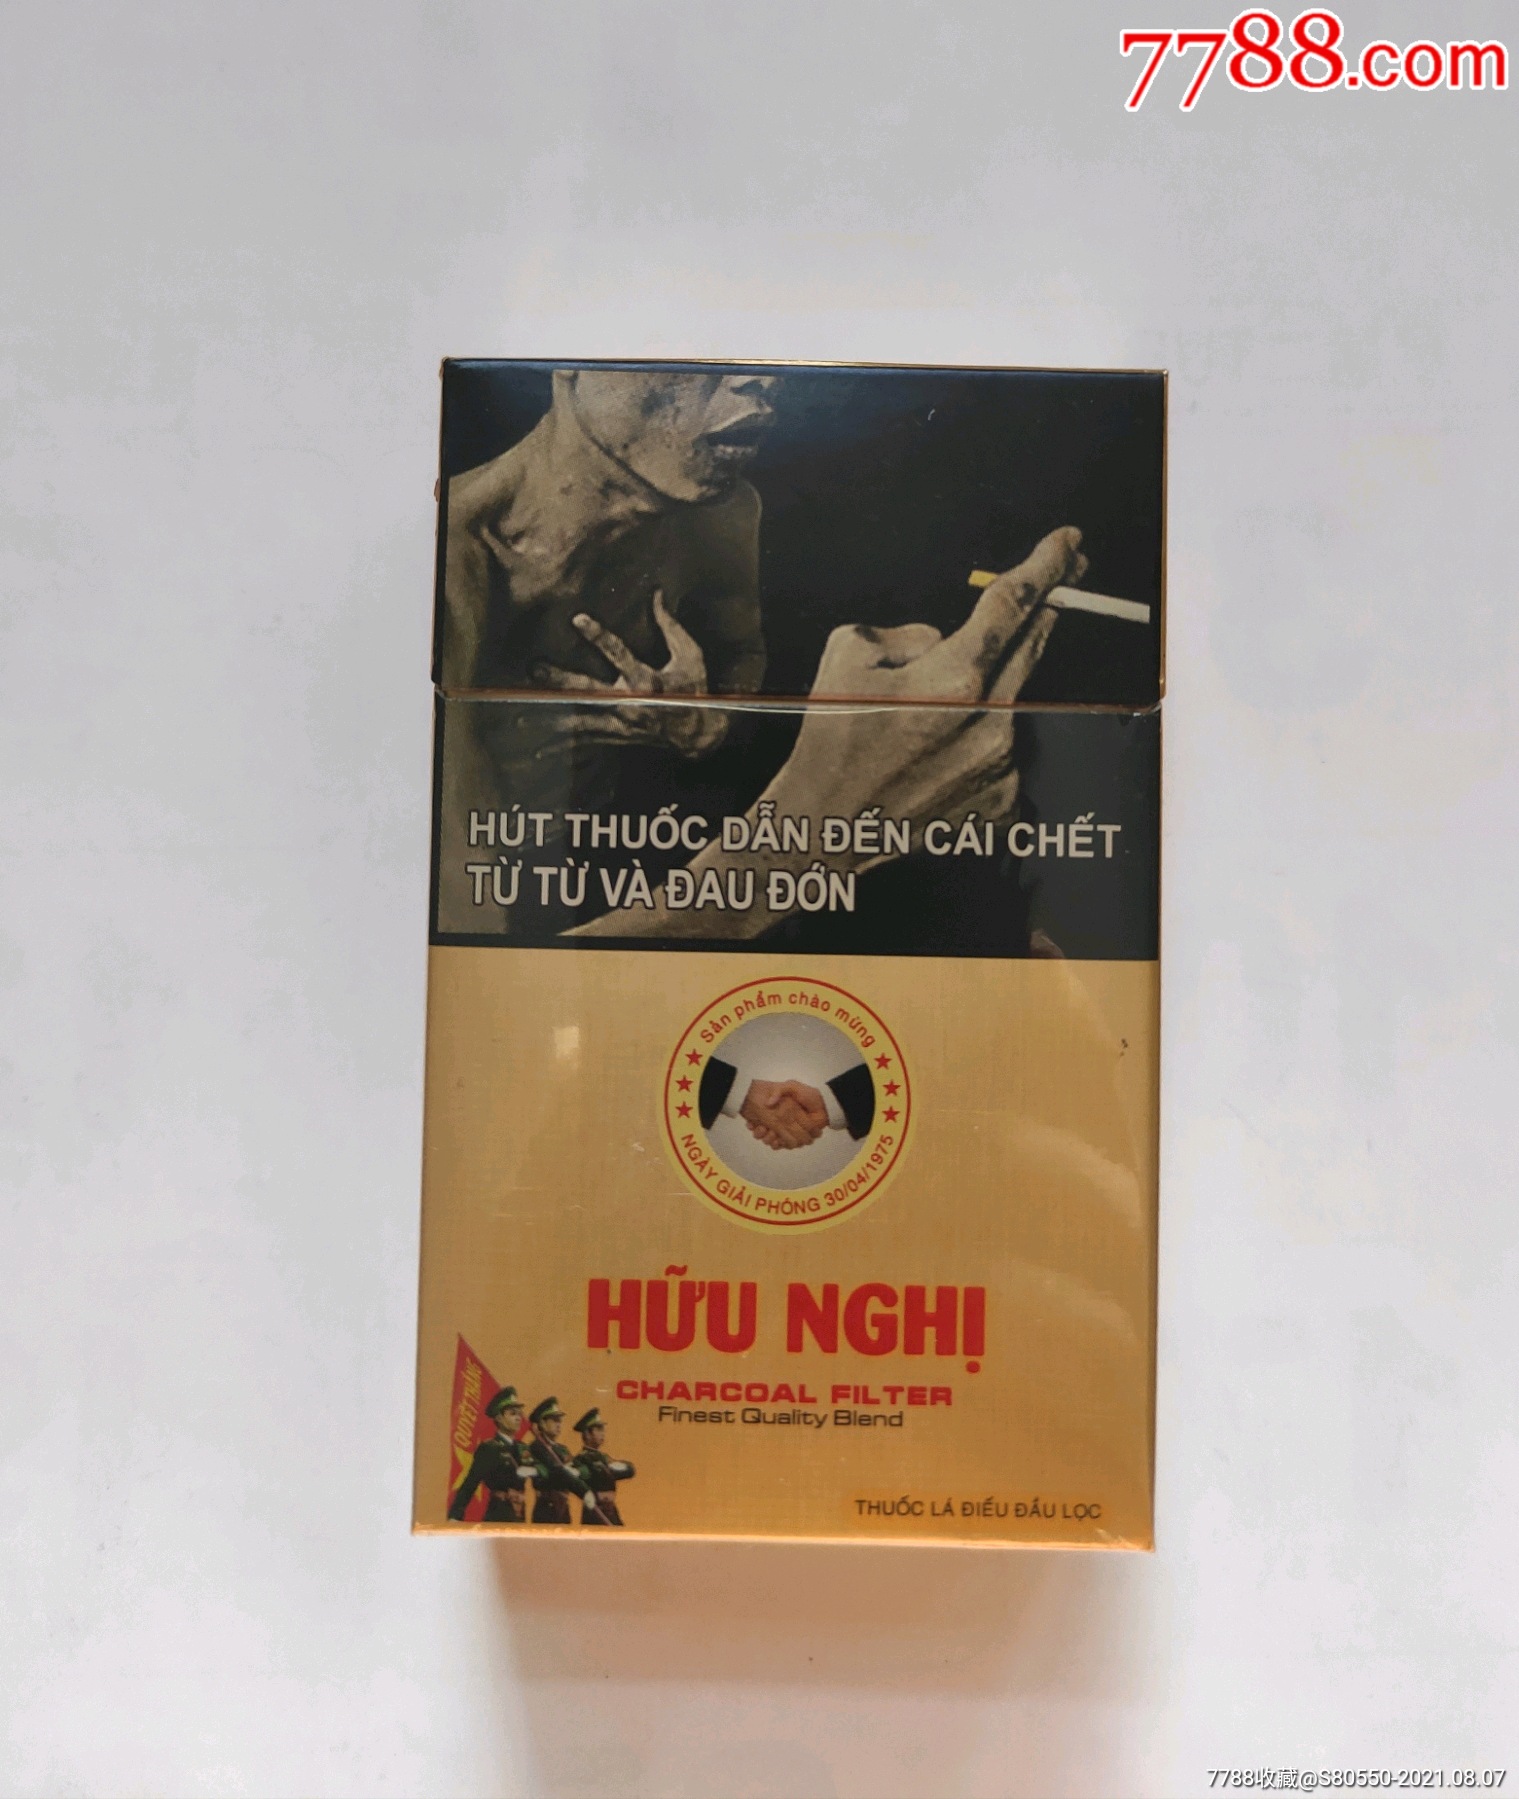 越南烟批发 联系方式图片